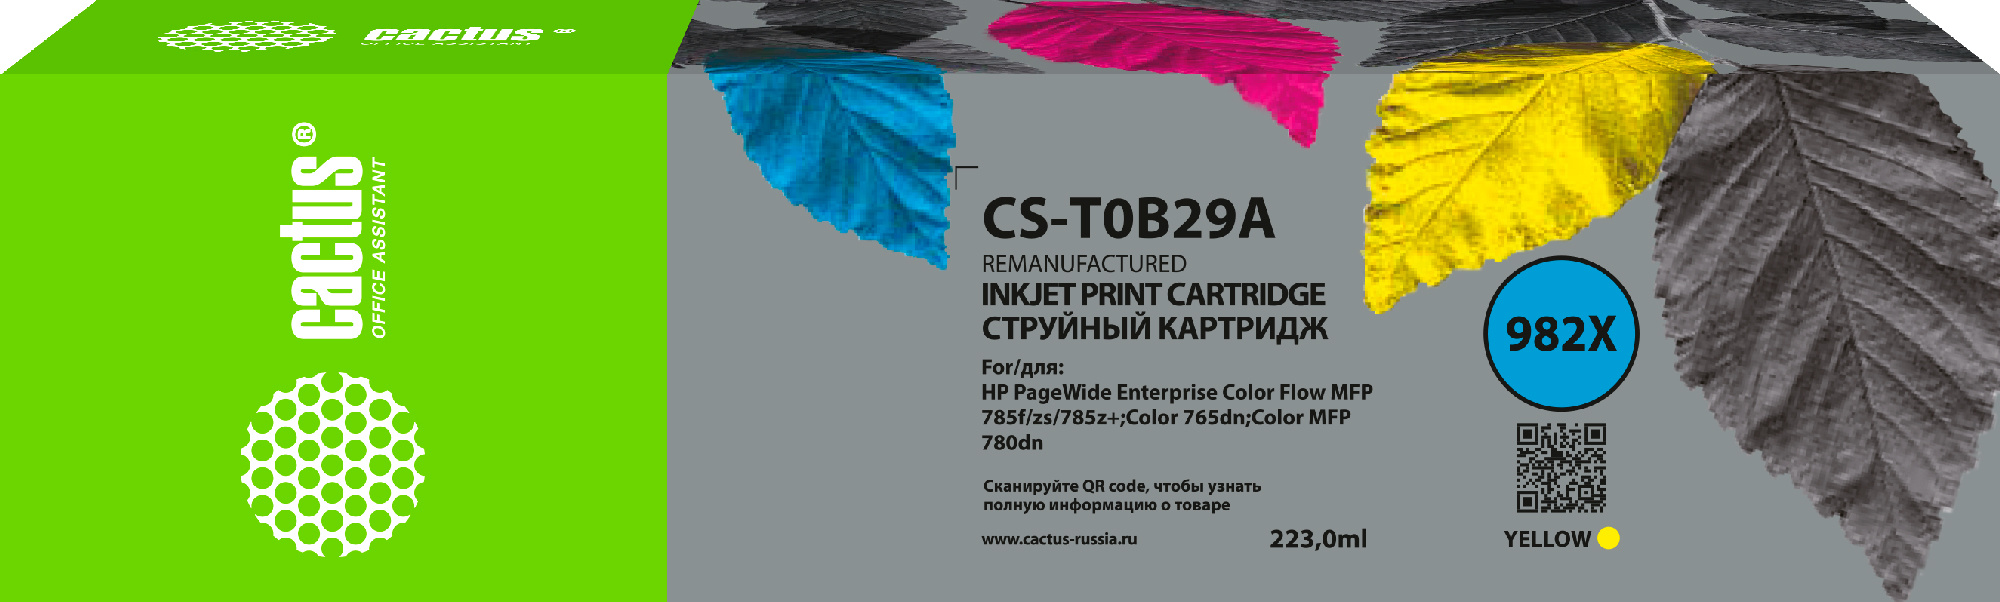   Cactus CS-T0B29A 982X  (223)  HP PageWide 765dn/780 Enterprise Color